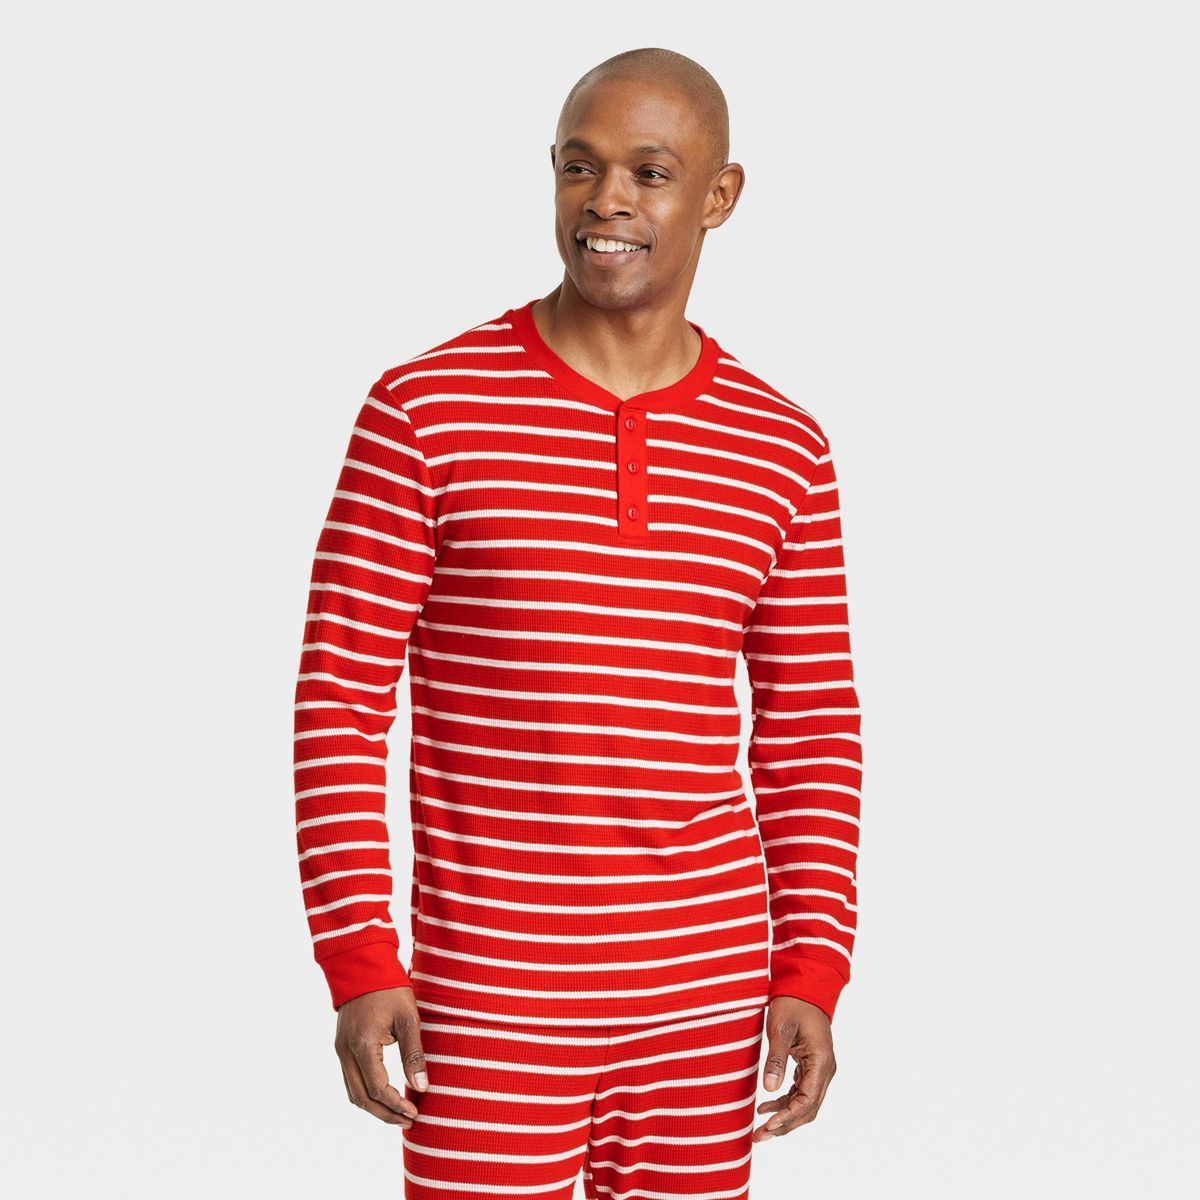 Men's Striped Matching Family Thermal Pajama Top - Wondershop™ Red S | Target